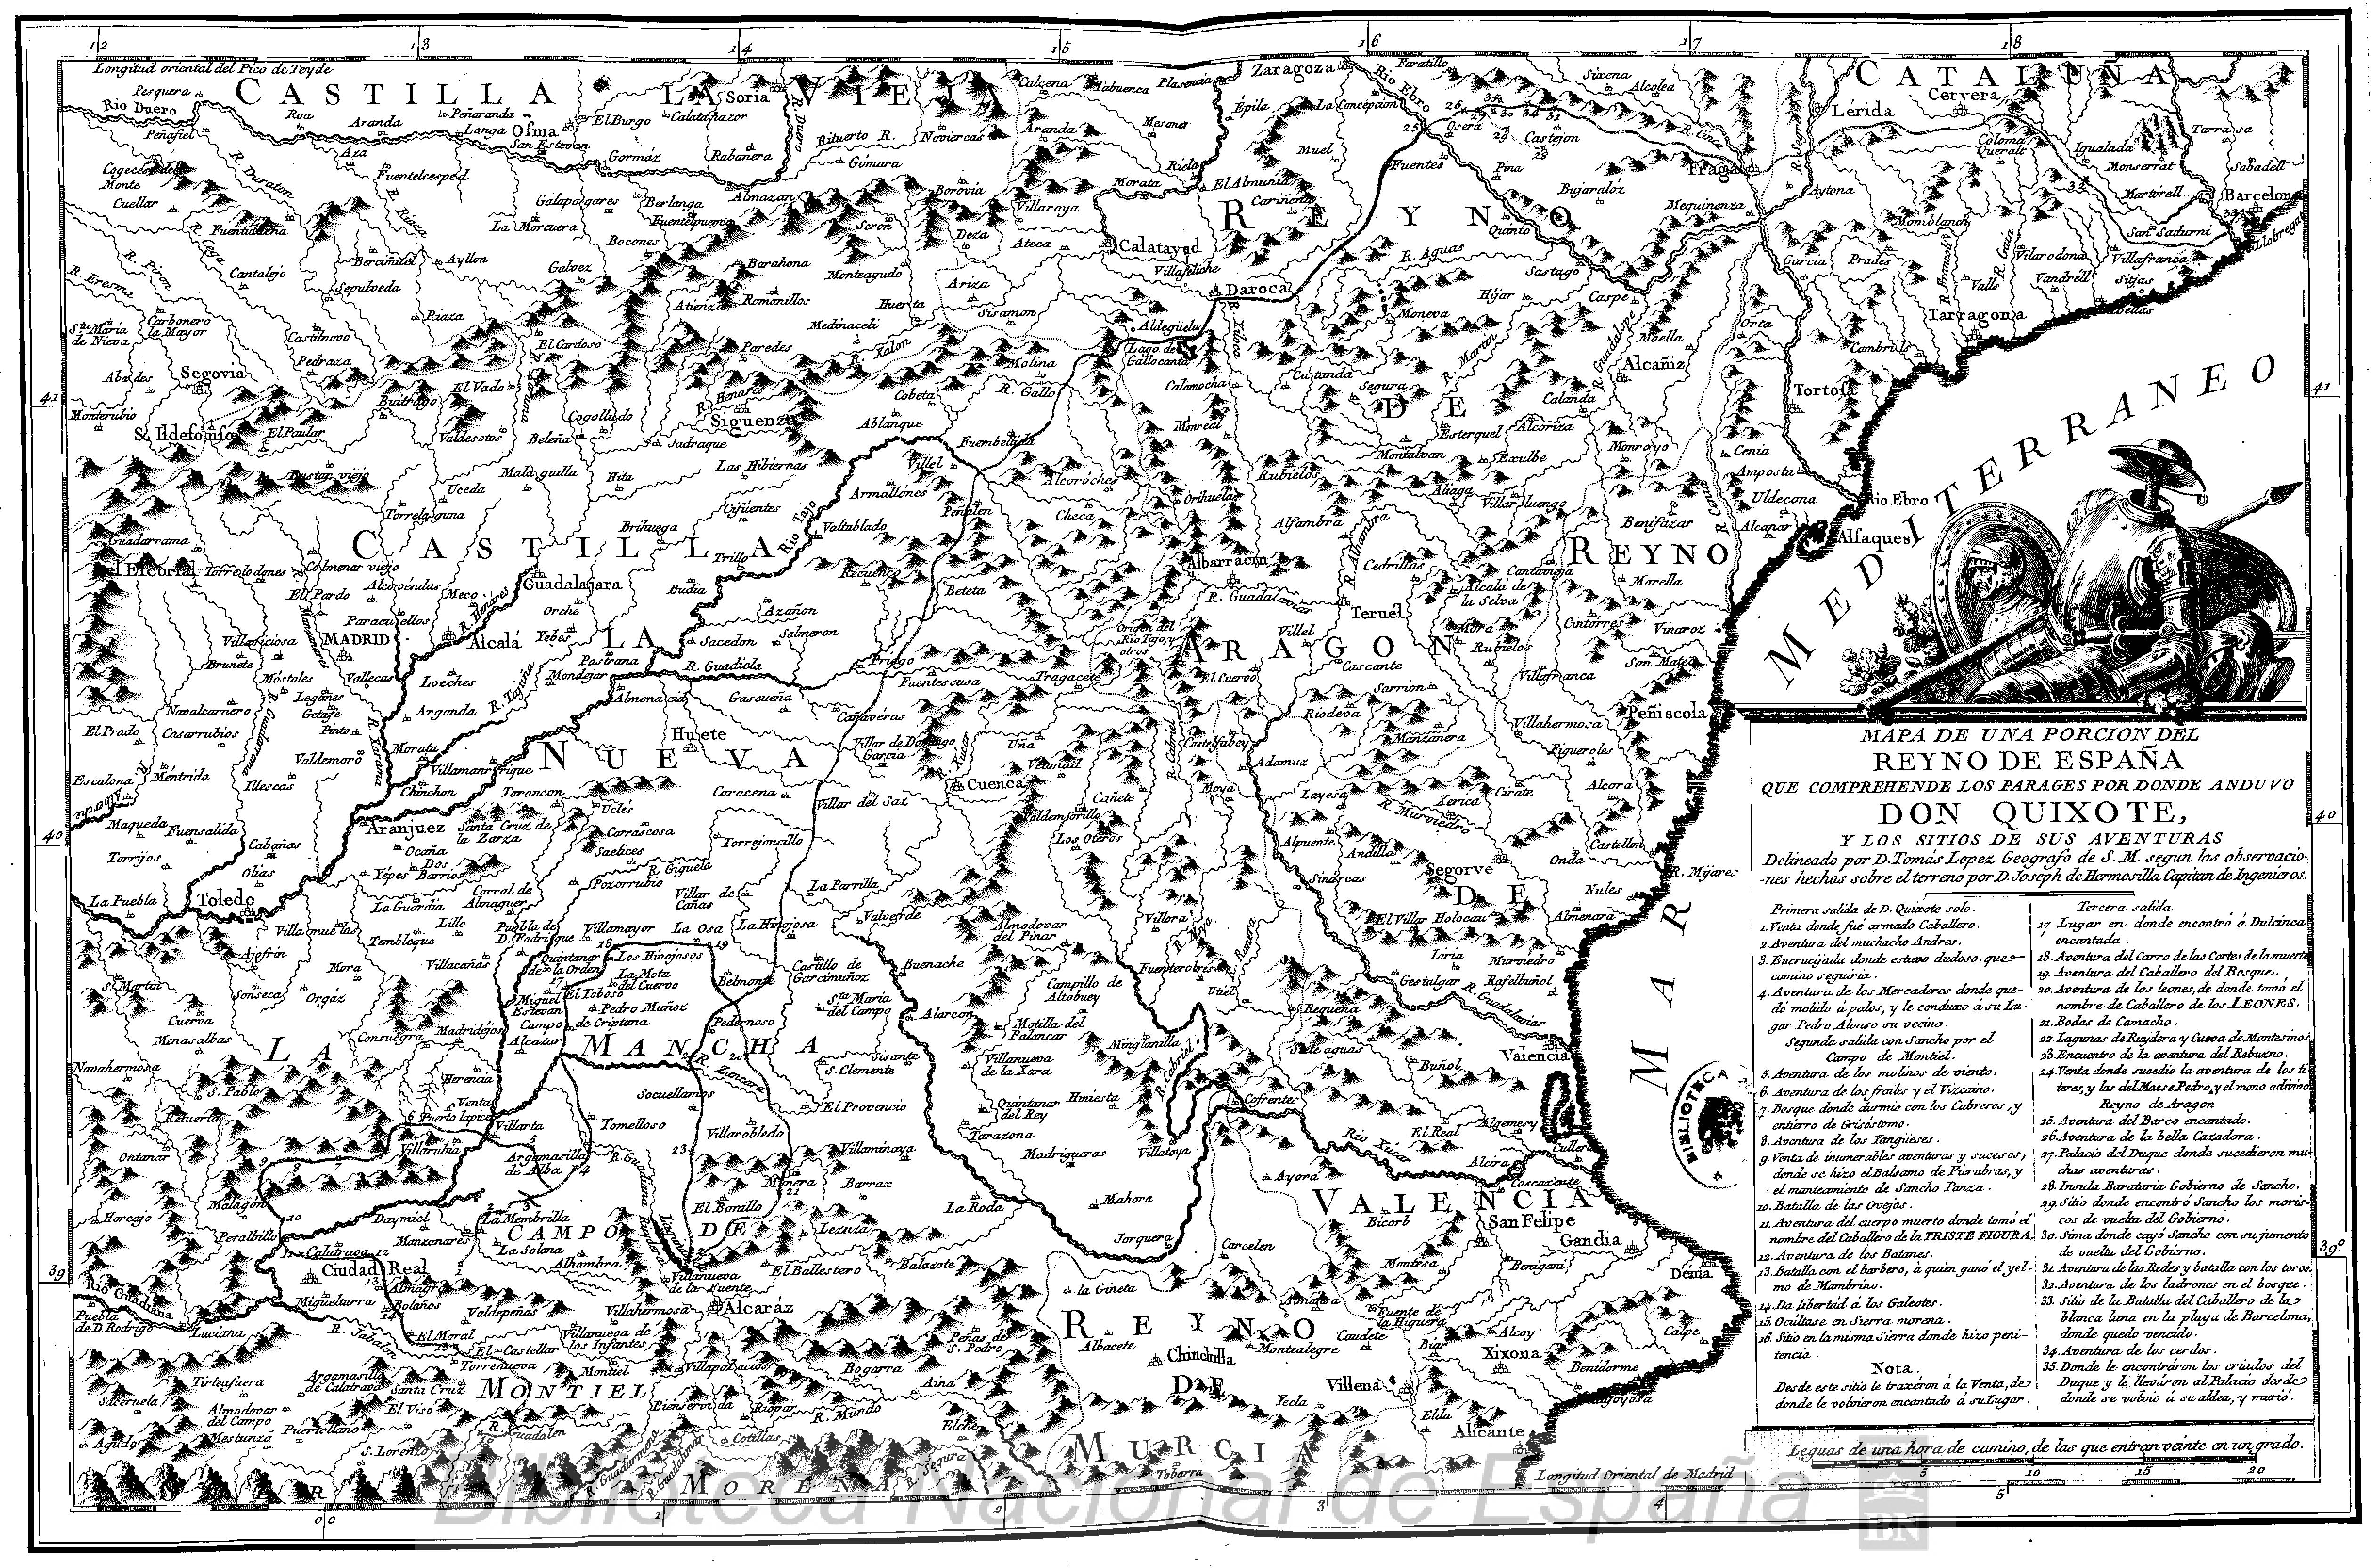 Map of Don Quixote y los sitios de sus aventuras RAE Ibarra edition 1780